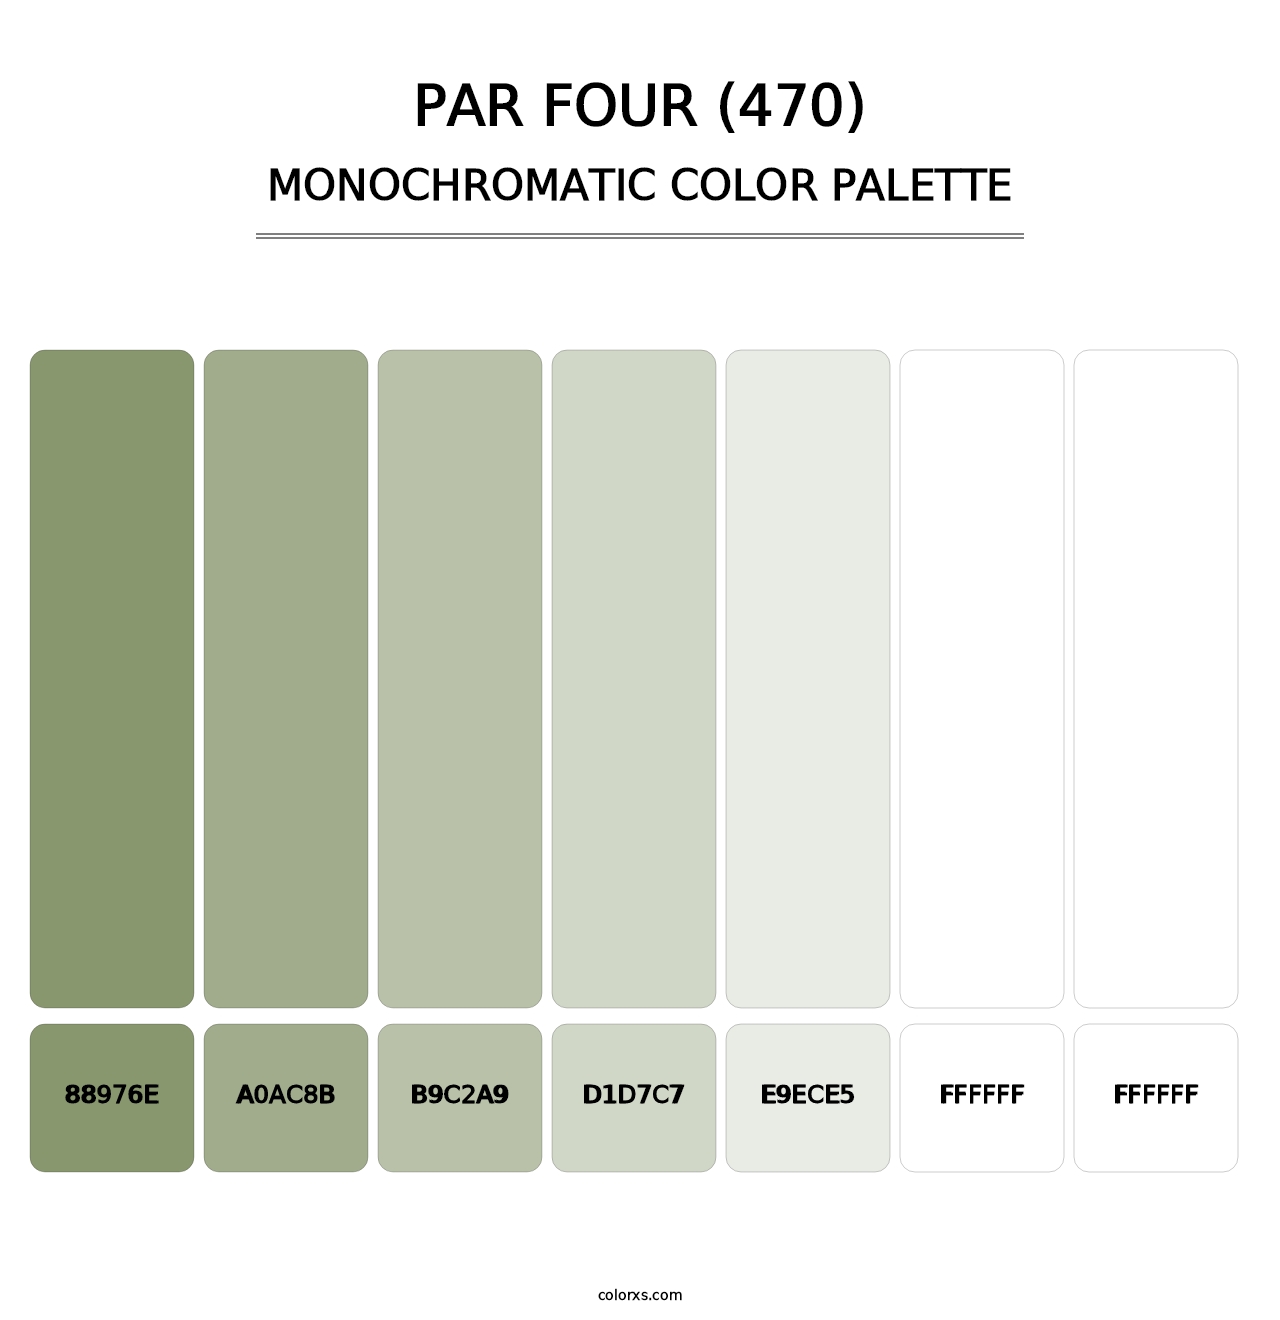 Par Four (470) - Monochromatic Color Palette